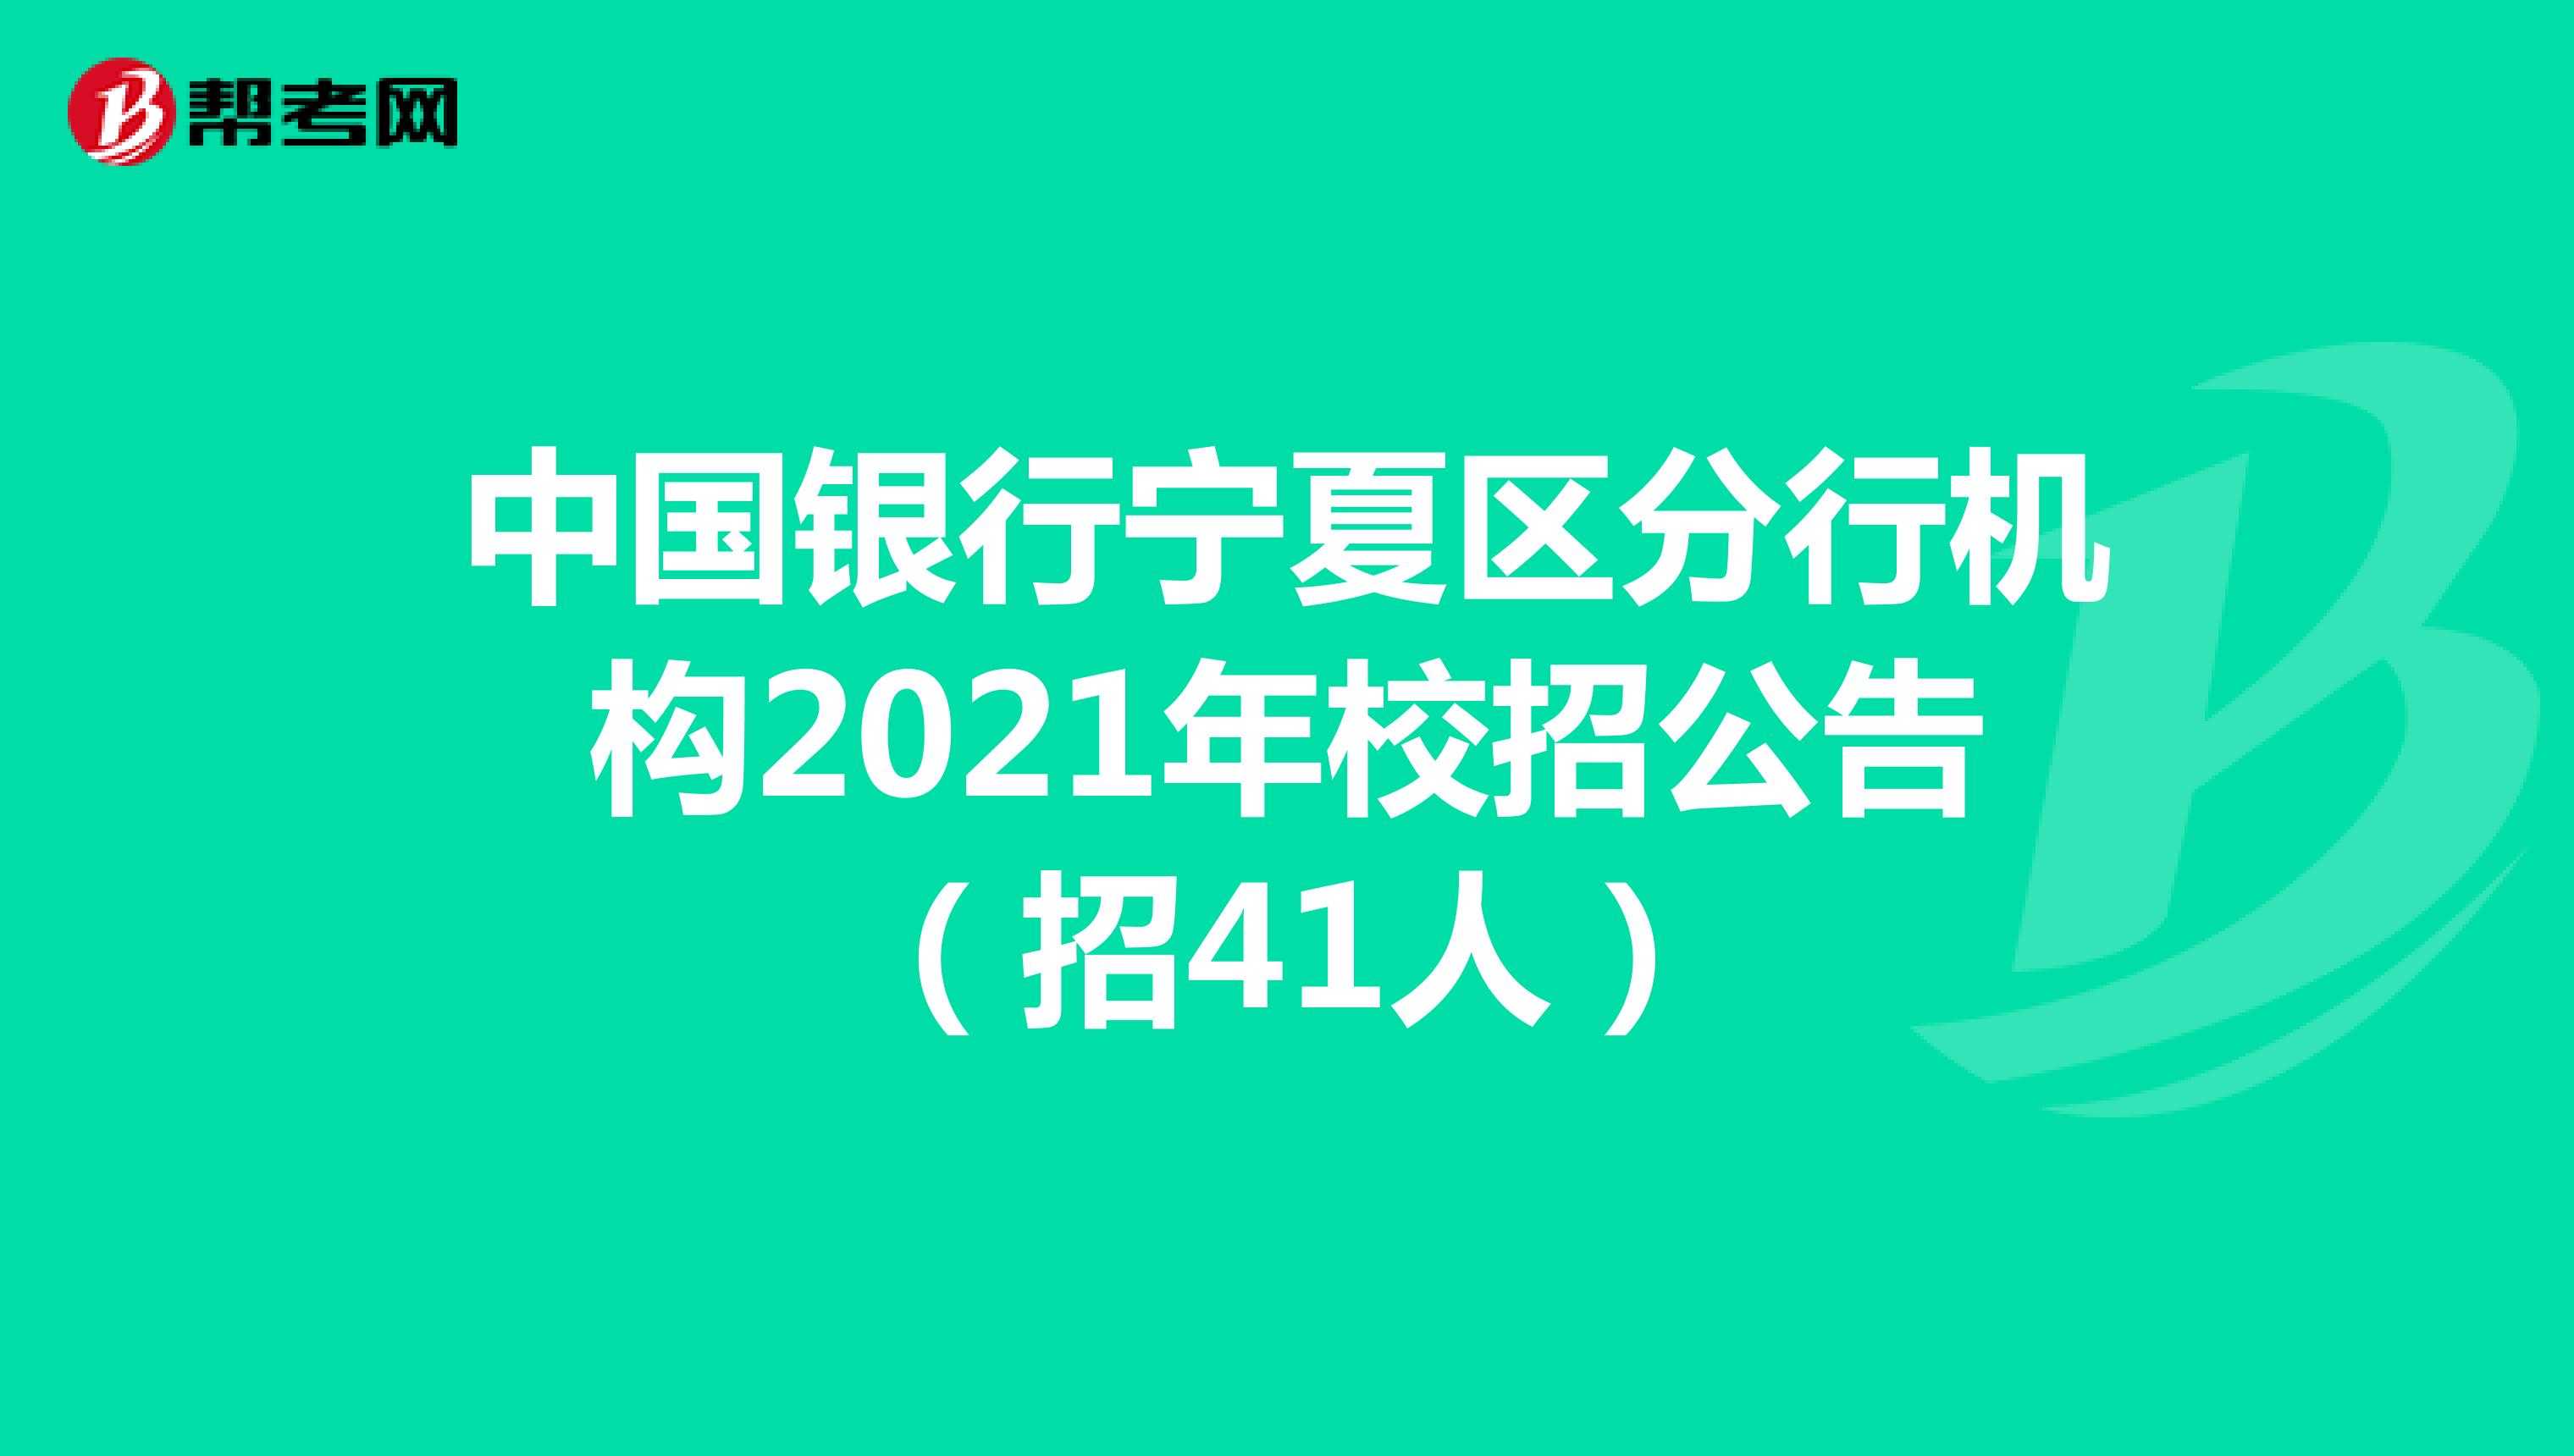 中国银行宁夏区分行机构2021年校招公告（招41人）